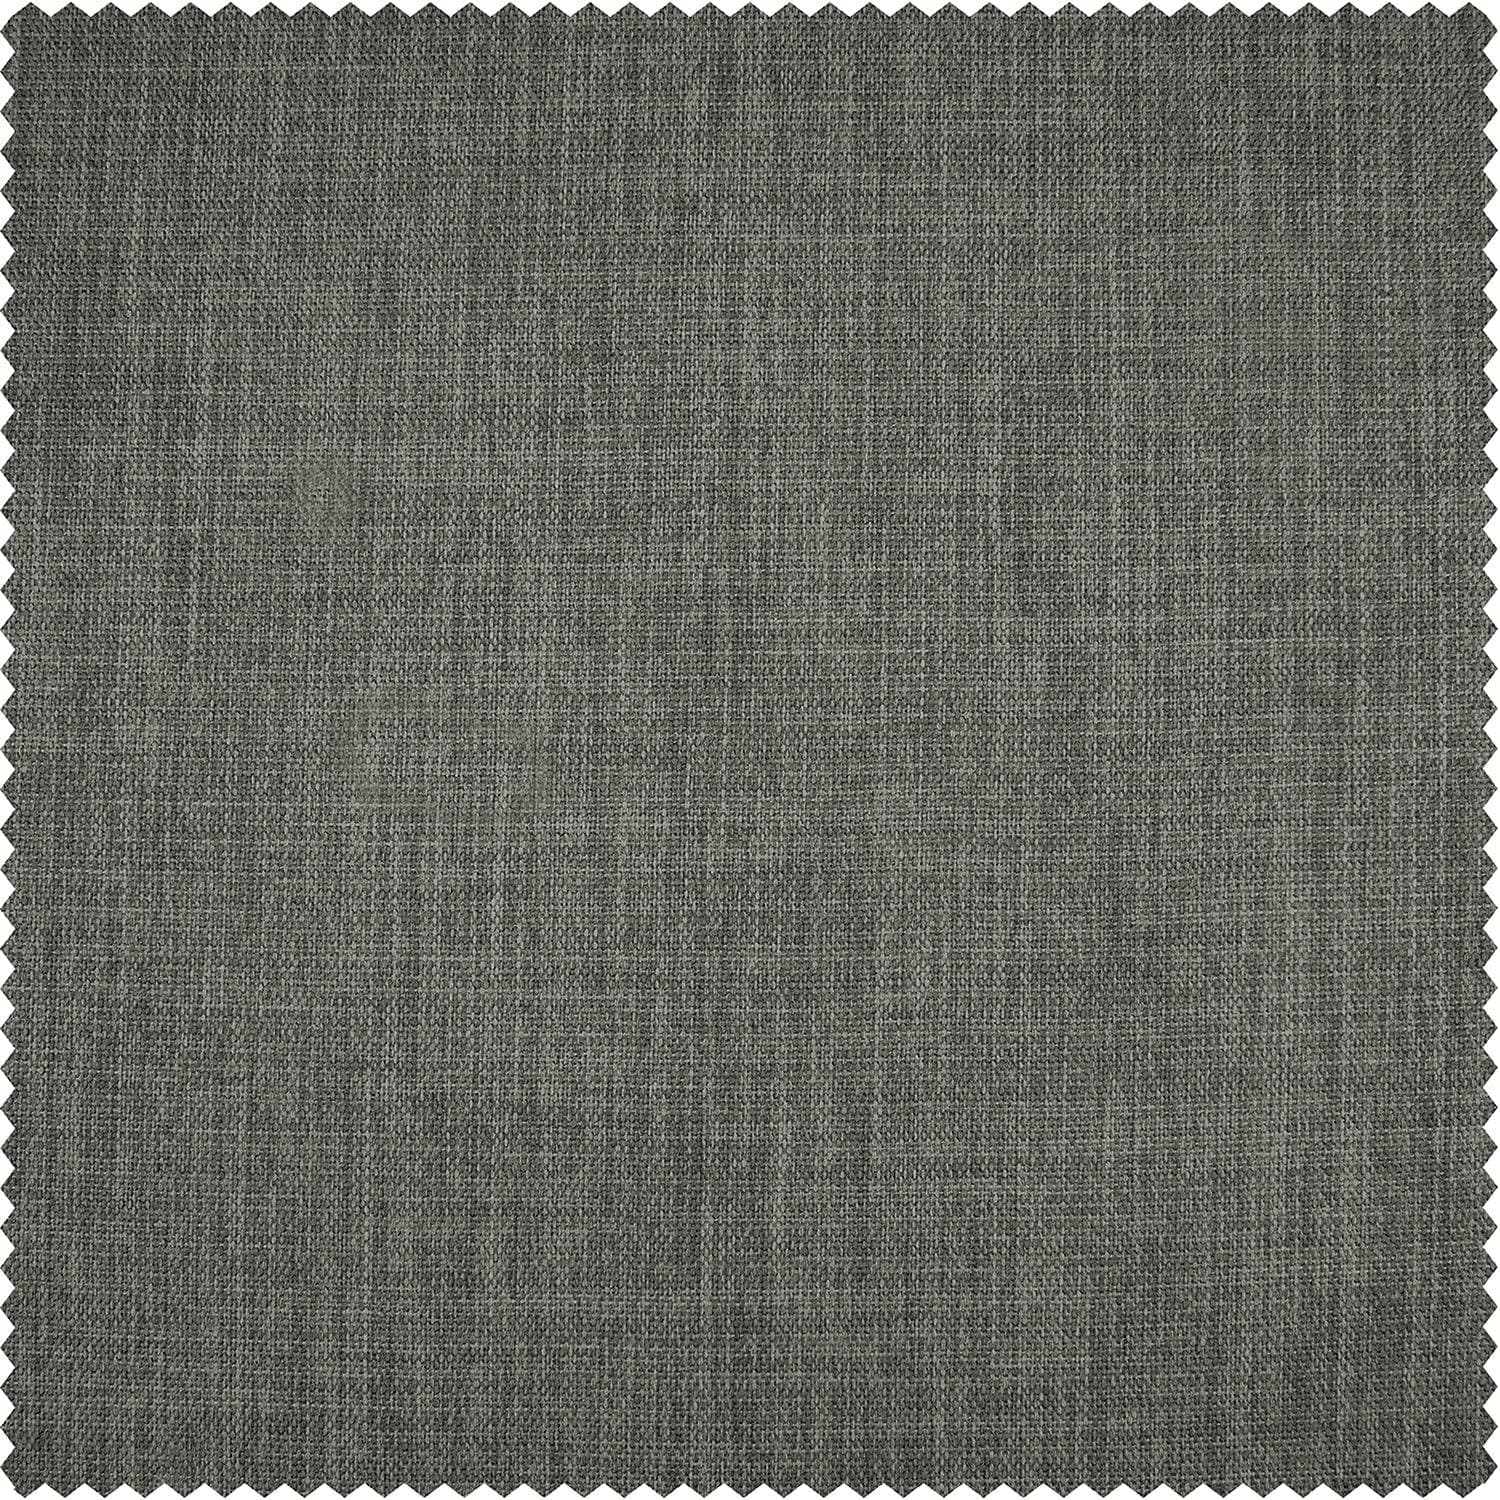 Blazer Grey Extra Wide Textured Faux Linen Room Darkening Curtain